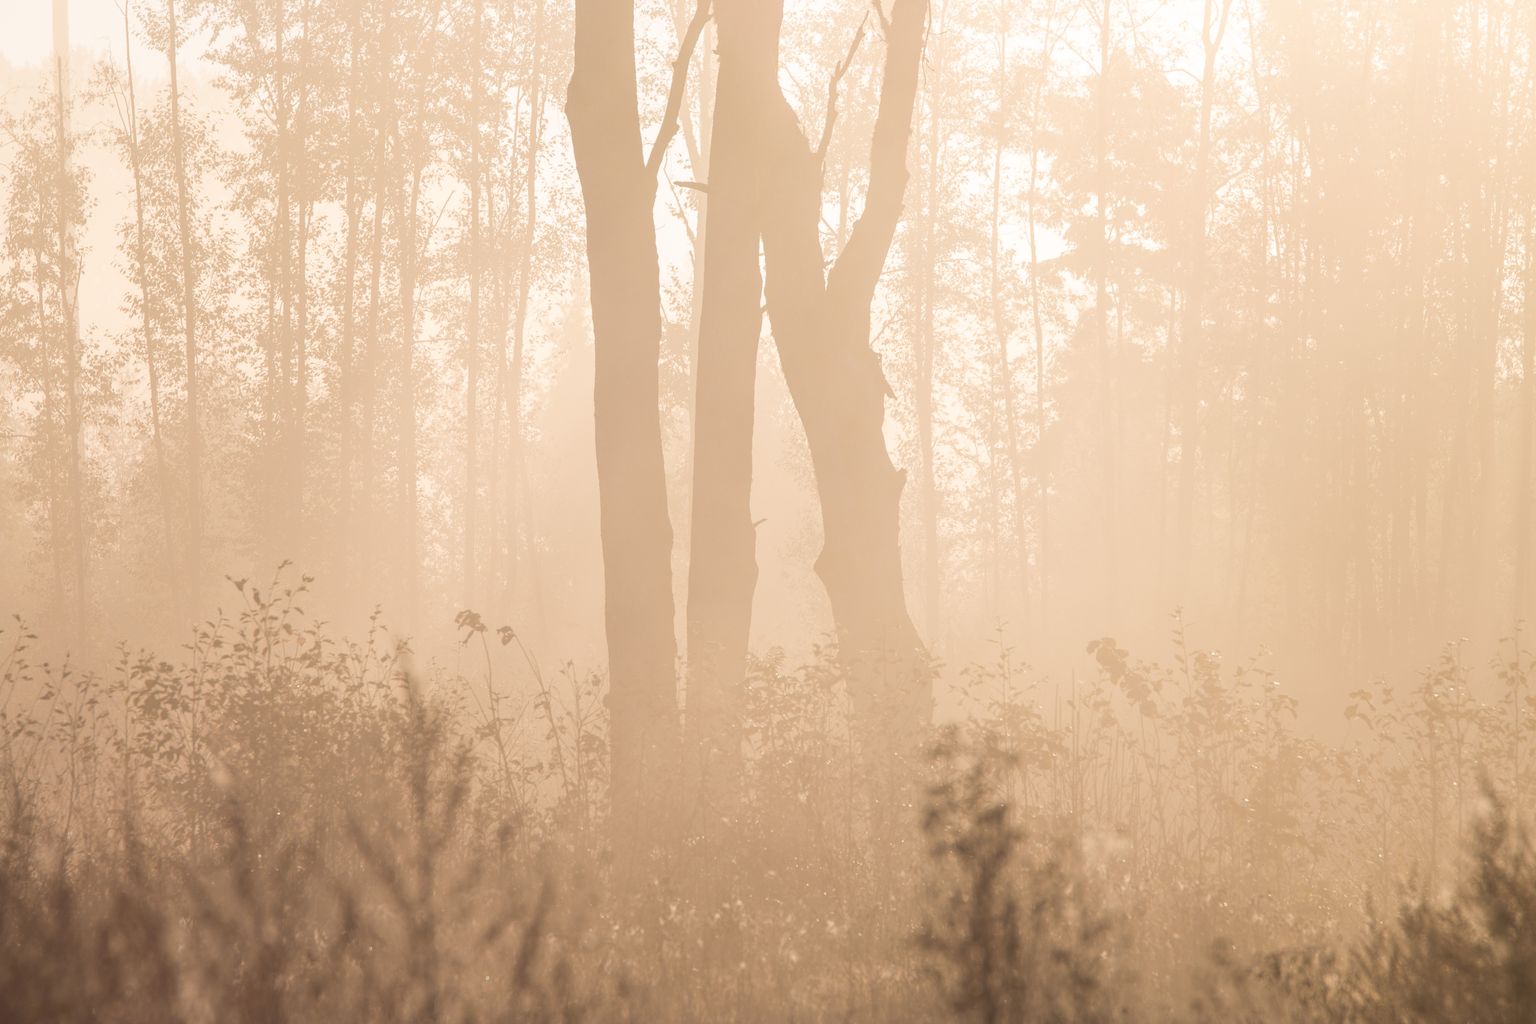 Eesti teadlaste tulemused näitasid, et aastane mullast õhku eralduv süsinikuvoog ei sõltunud metsa vanusest.